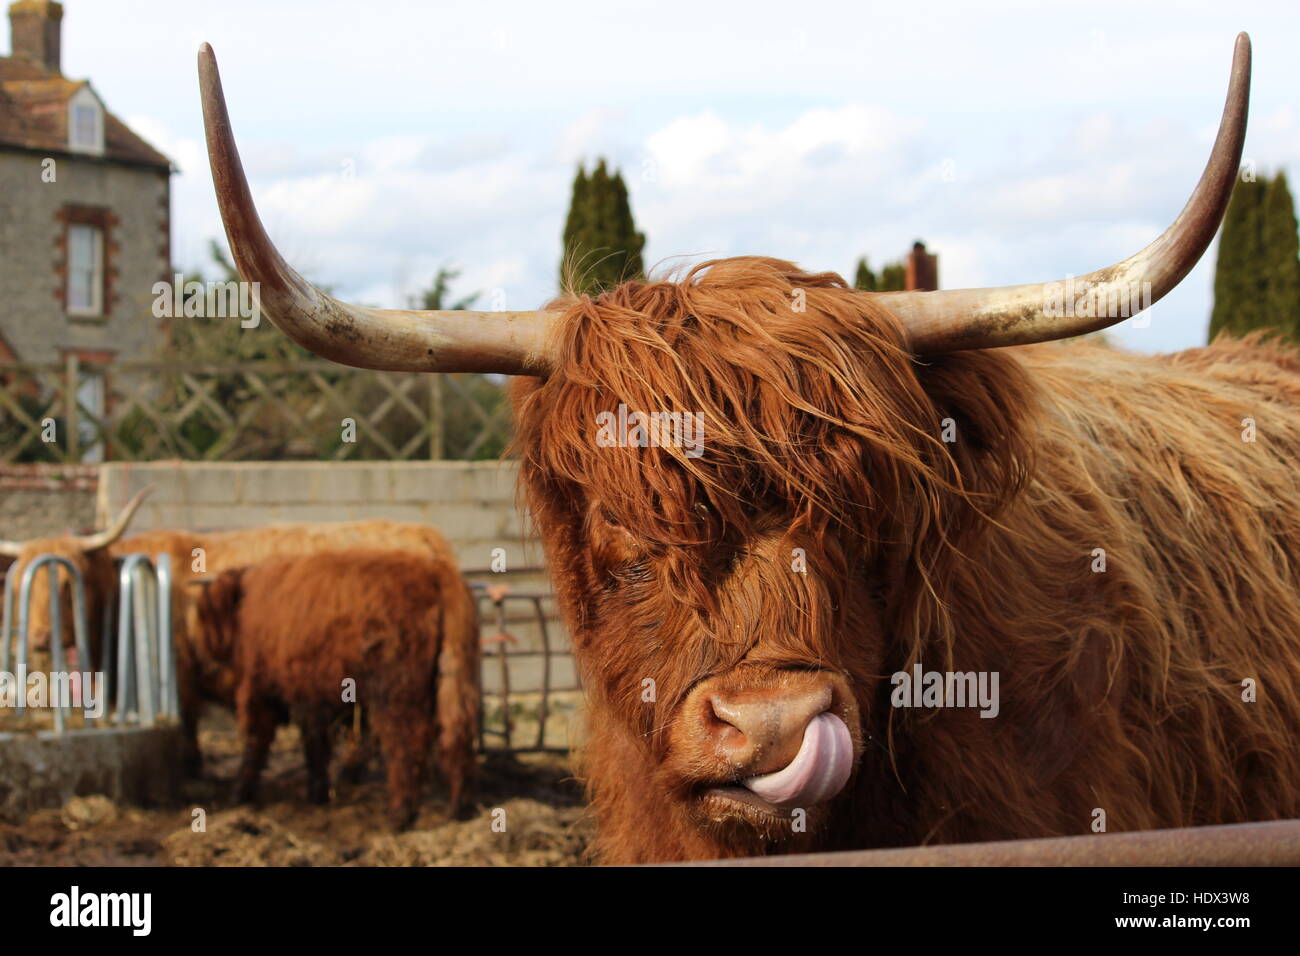 Vache Highland cattle licking langue lèvres longues cornes ondulé red coat portrait Banque D'Images